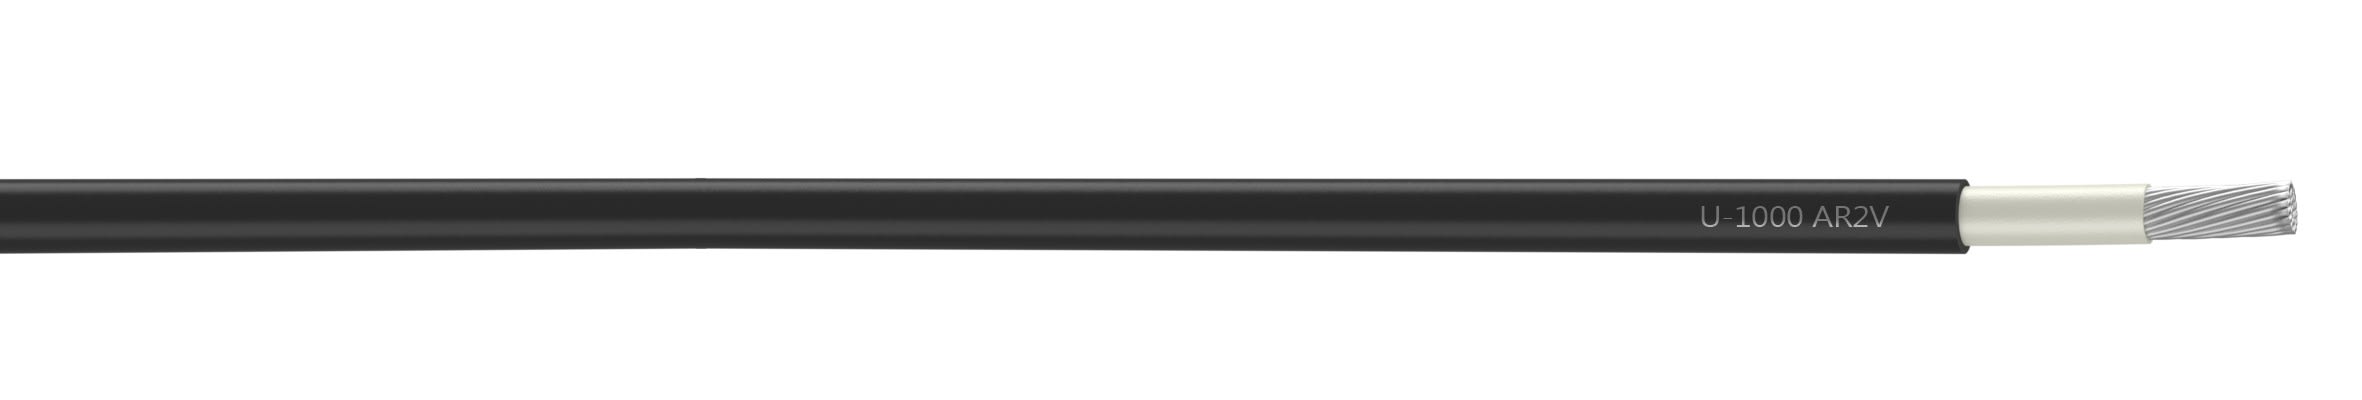 Nexans - Câble rigide U-1000 AR2V aluminium 1x300 longueur à la coupe